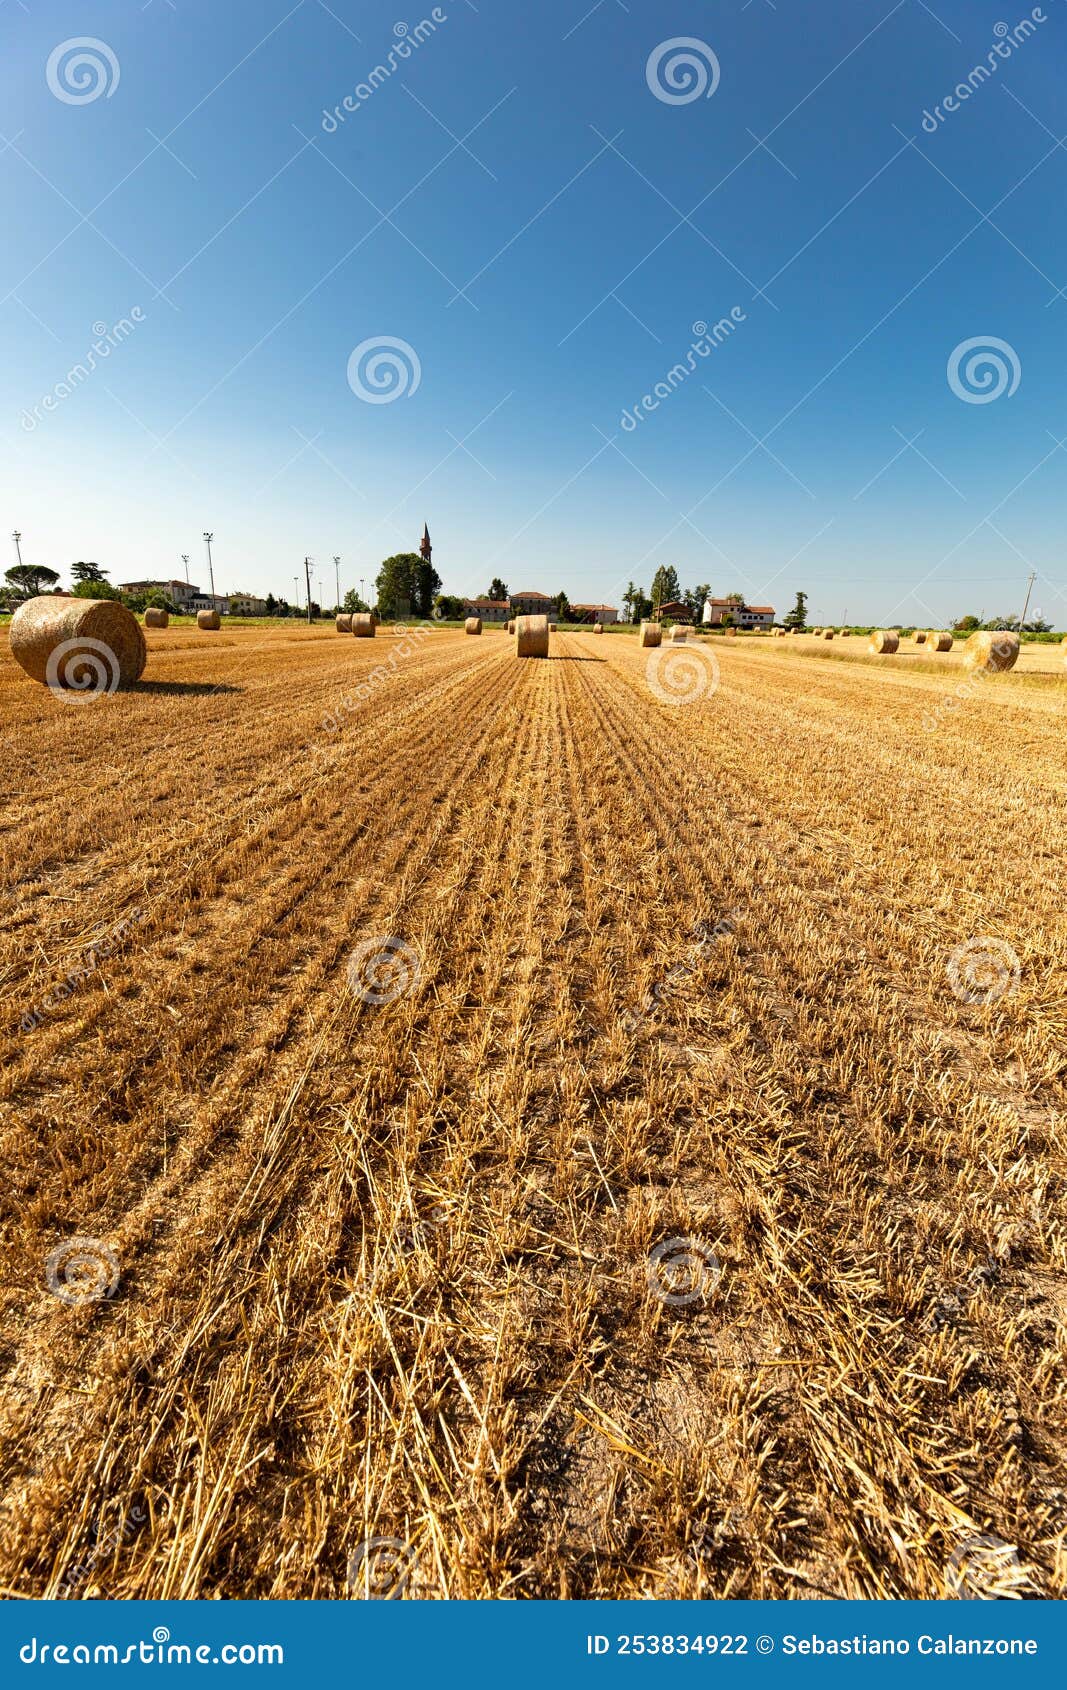 palle di paglia sul campo in estate dopo la raccolta della segale, cielo azzurro sul prato. lavoro stagionale agricolo